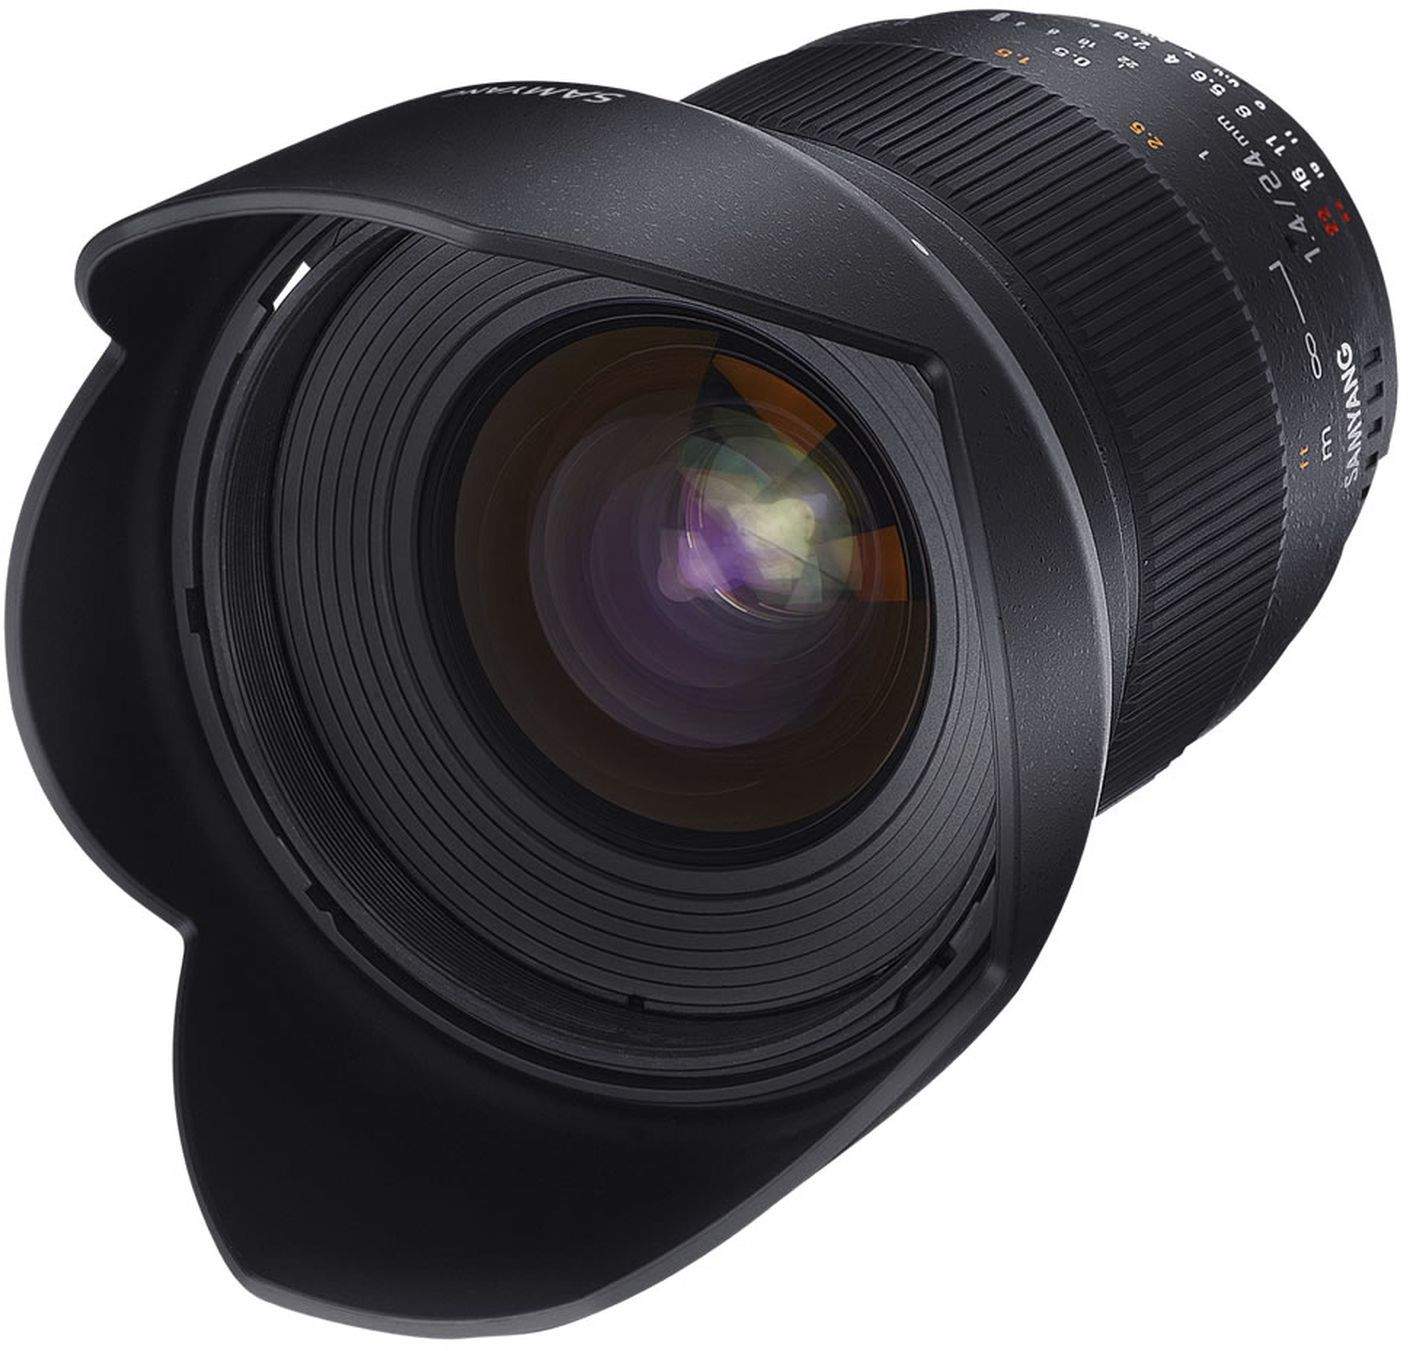 Samyang 24mm F1.4 UMC II Canon M Full Frame Camera Lens main image